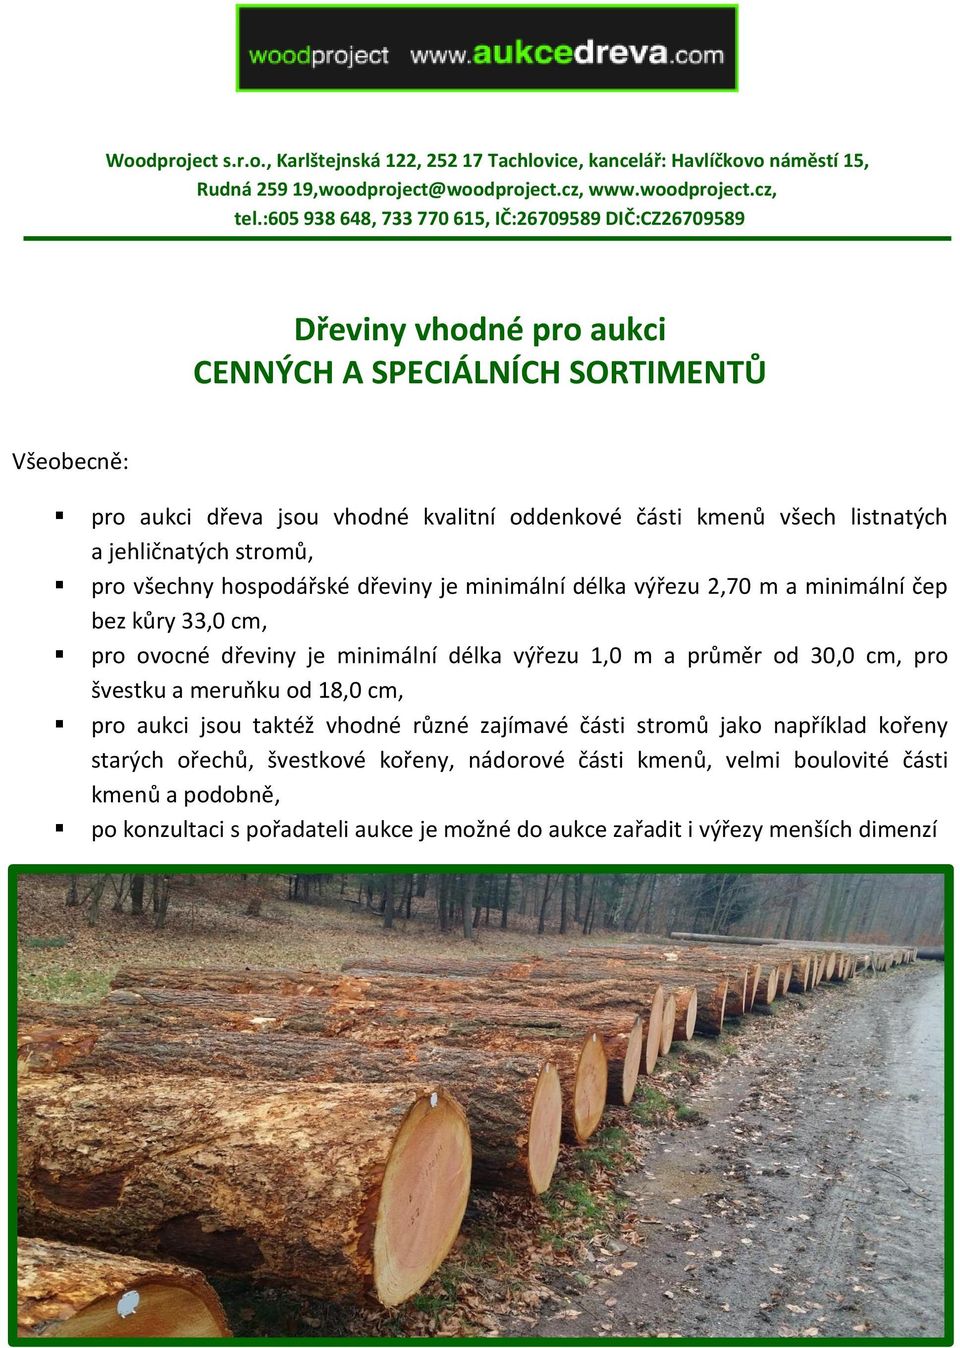 a jehličnatých stromů, pro všechny hospodářské dřeviny je minimální délka výřezu 2,70 m a minimální čep bez kůry 33,0 cm, pro ovocné dřeviny je minimální délka výřezu 1,0 m a průměr od 30,0 cm, pro